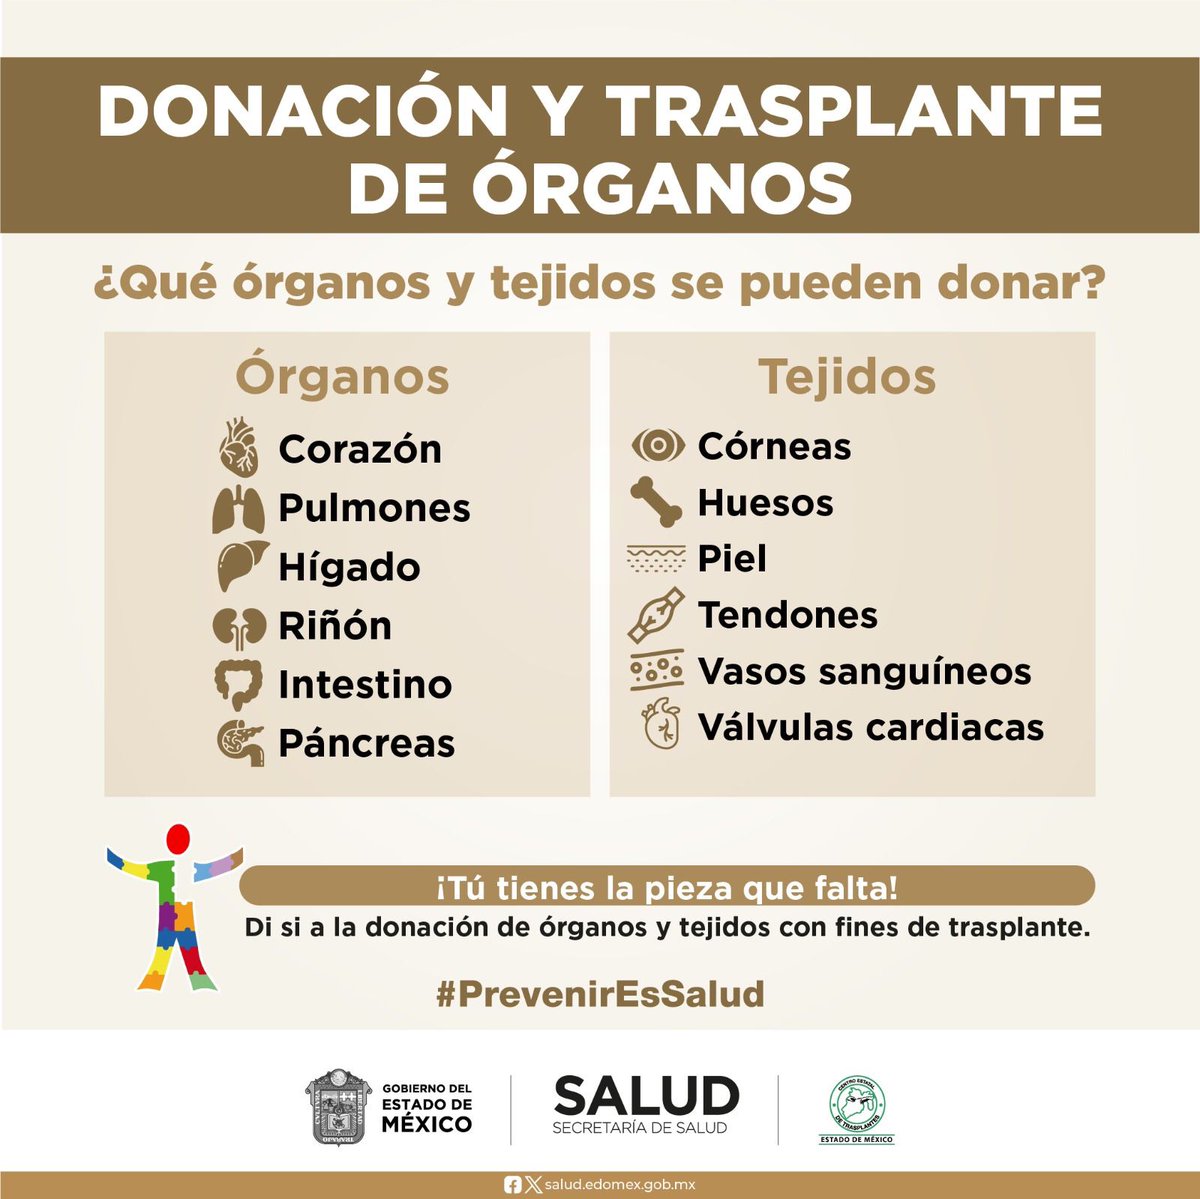 Te recordamos que, la donación altruista de órganos puede salvar hasta 7 vidas.
Conoce los requisitos para convertirte en una donadora o donador altruista, ingresa en: cetraem.edomex.gob.mx
¡Tú puedes ser un donador altruista!
#DonarÓrganosEsDonarVida
@SaludEdomex